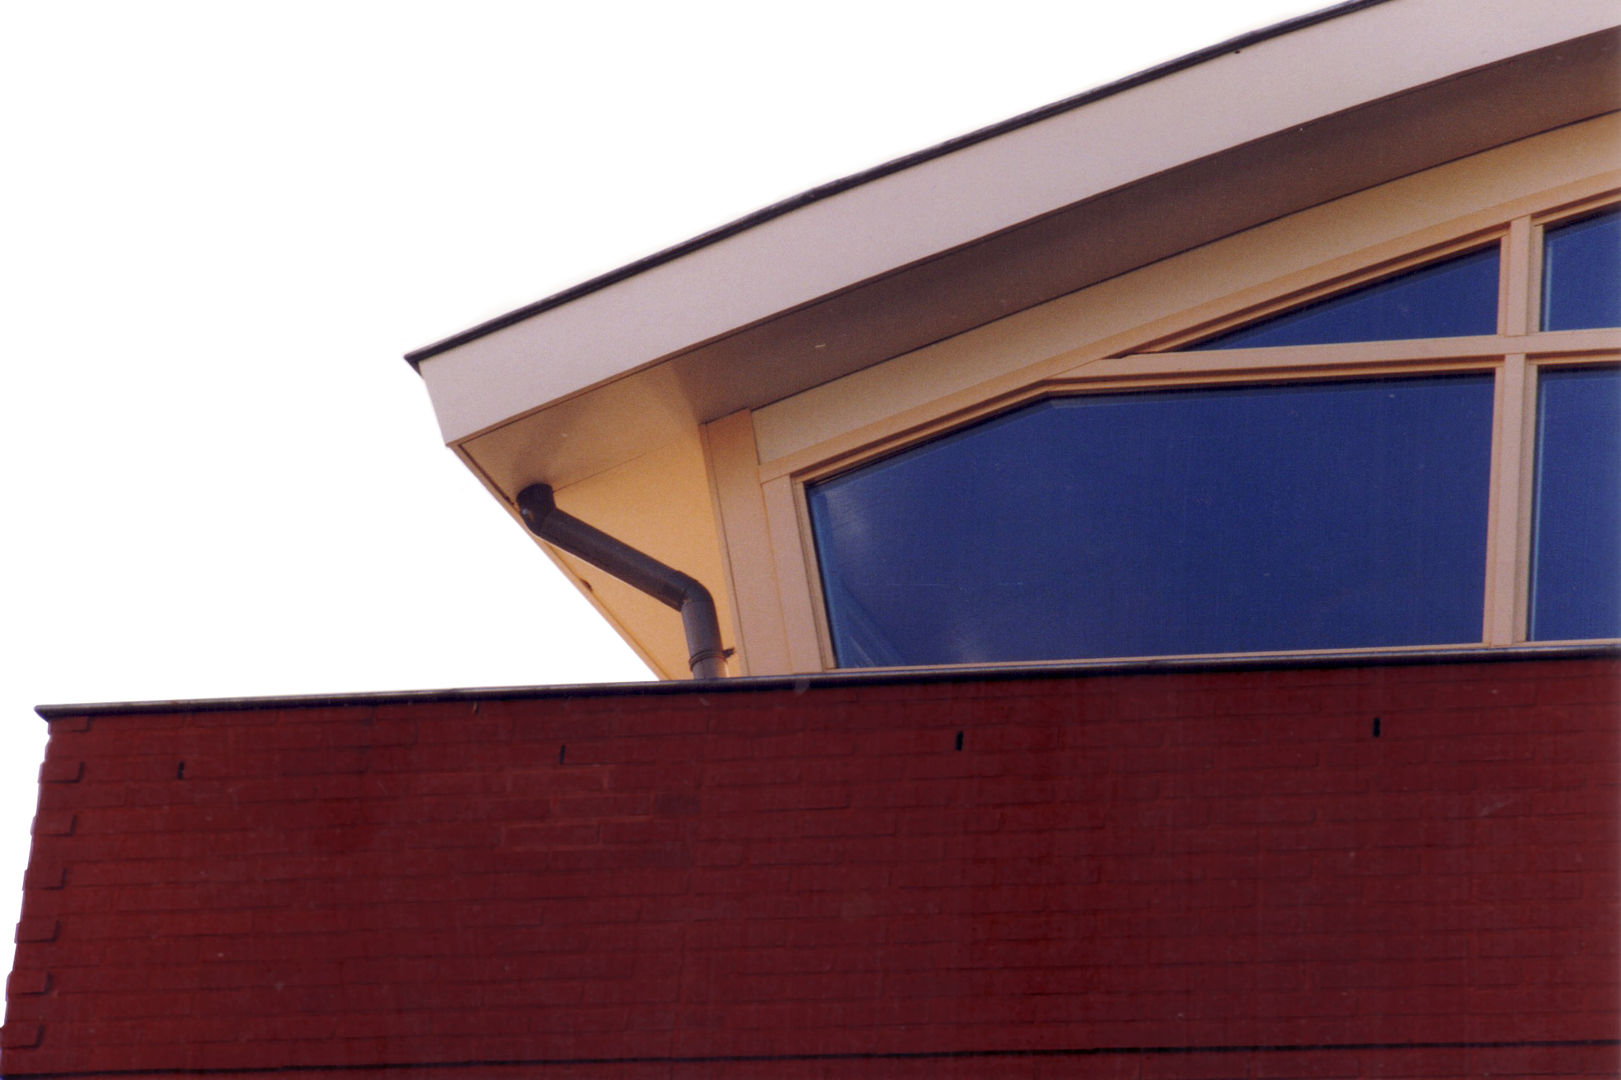 Detail dak-gevel ABC-Idee Moderne huizen Lucht,Raam,Rechthoek,Hout,Schaduw,Gebouw,Armatuur,Tinten en tinten,Facade,opruimen